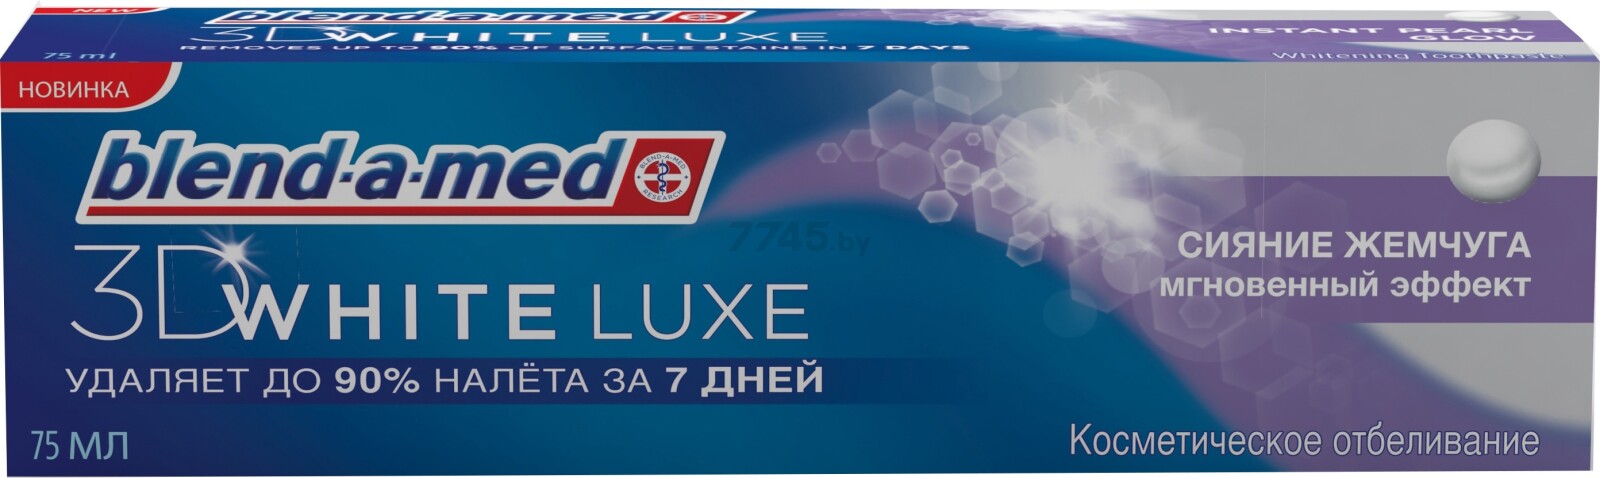 Зубная паста BLEND-A-MED 3D White Luxe С экстрактом жемчуга 75 мл (5410076893423)